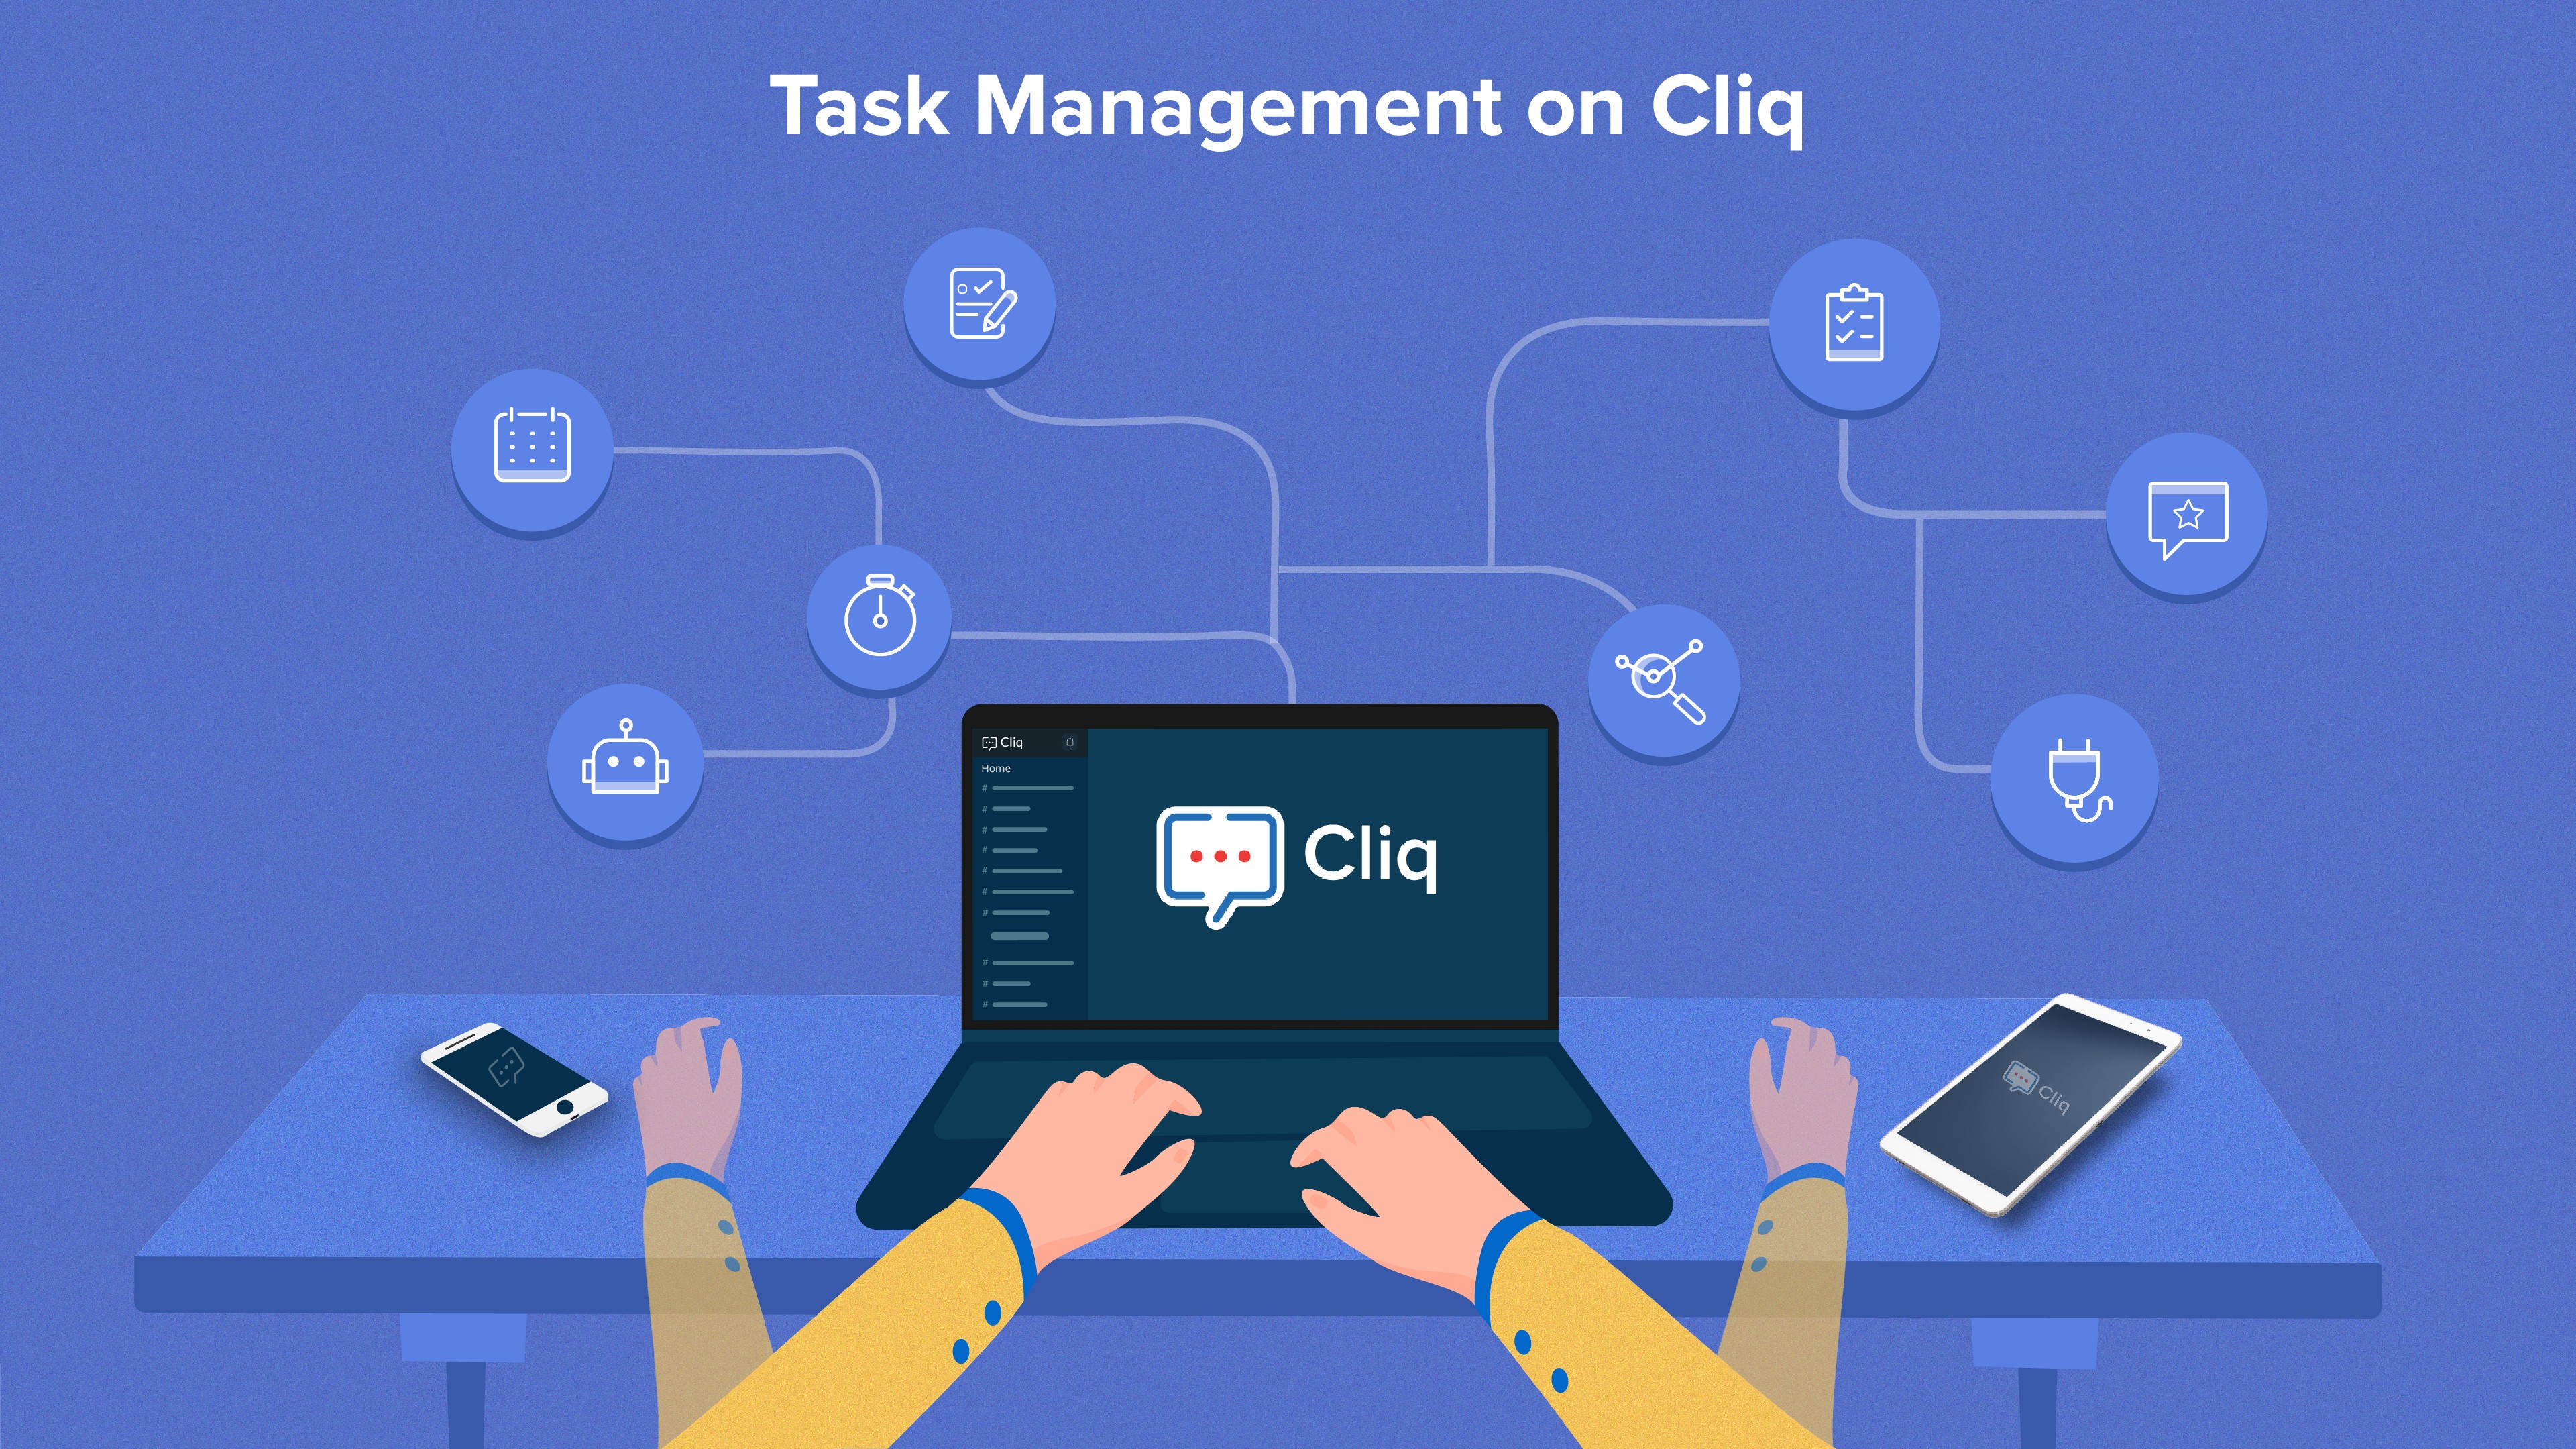 Task management on Cliq